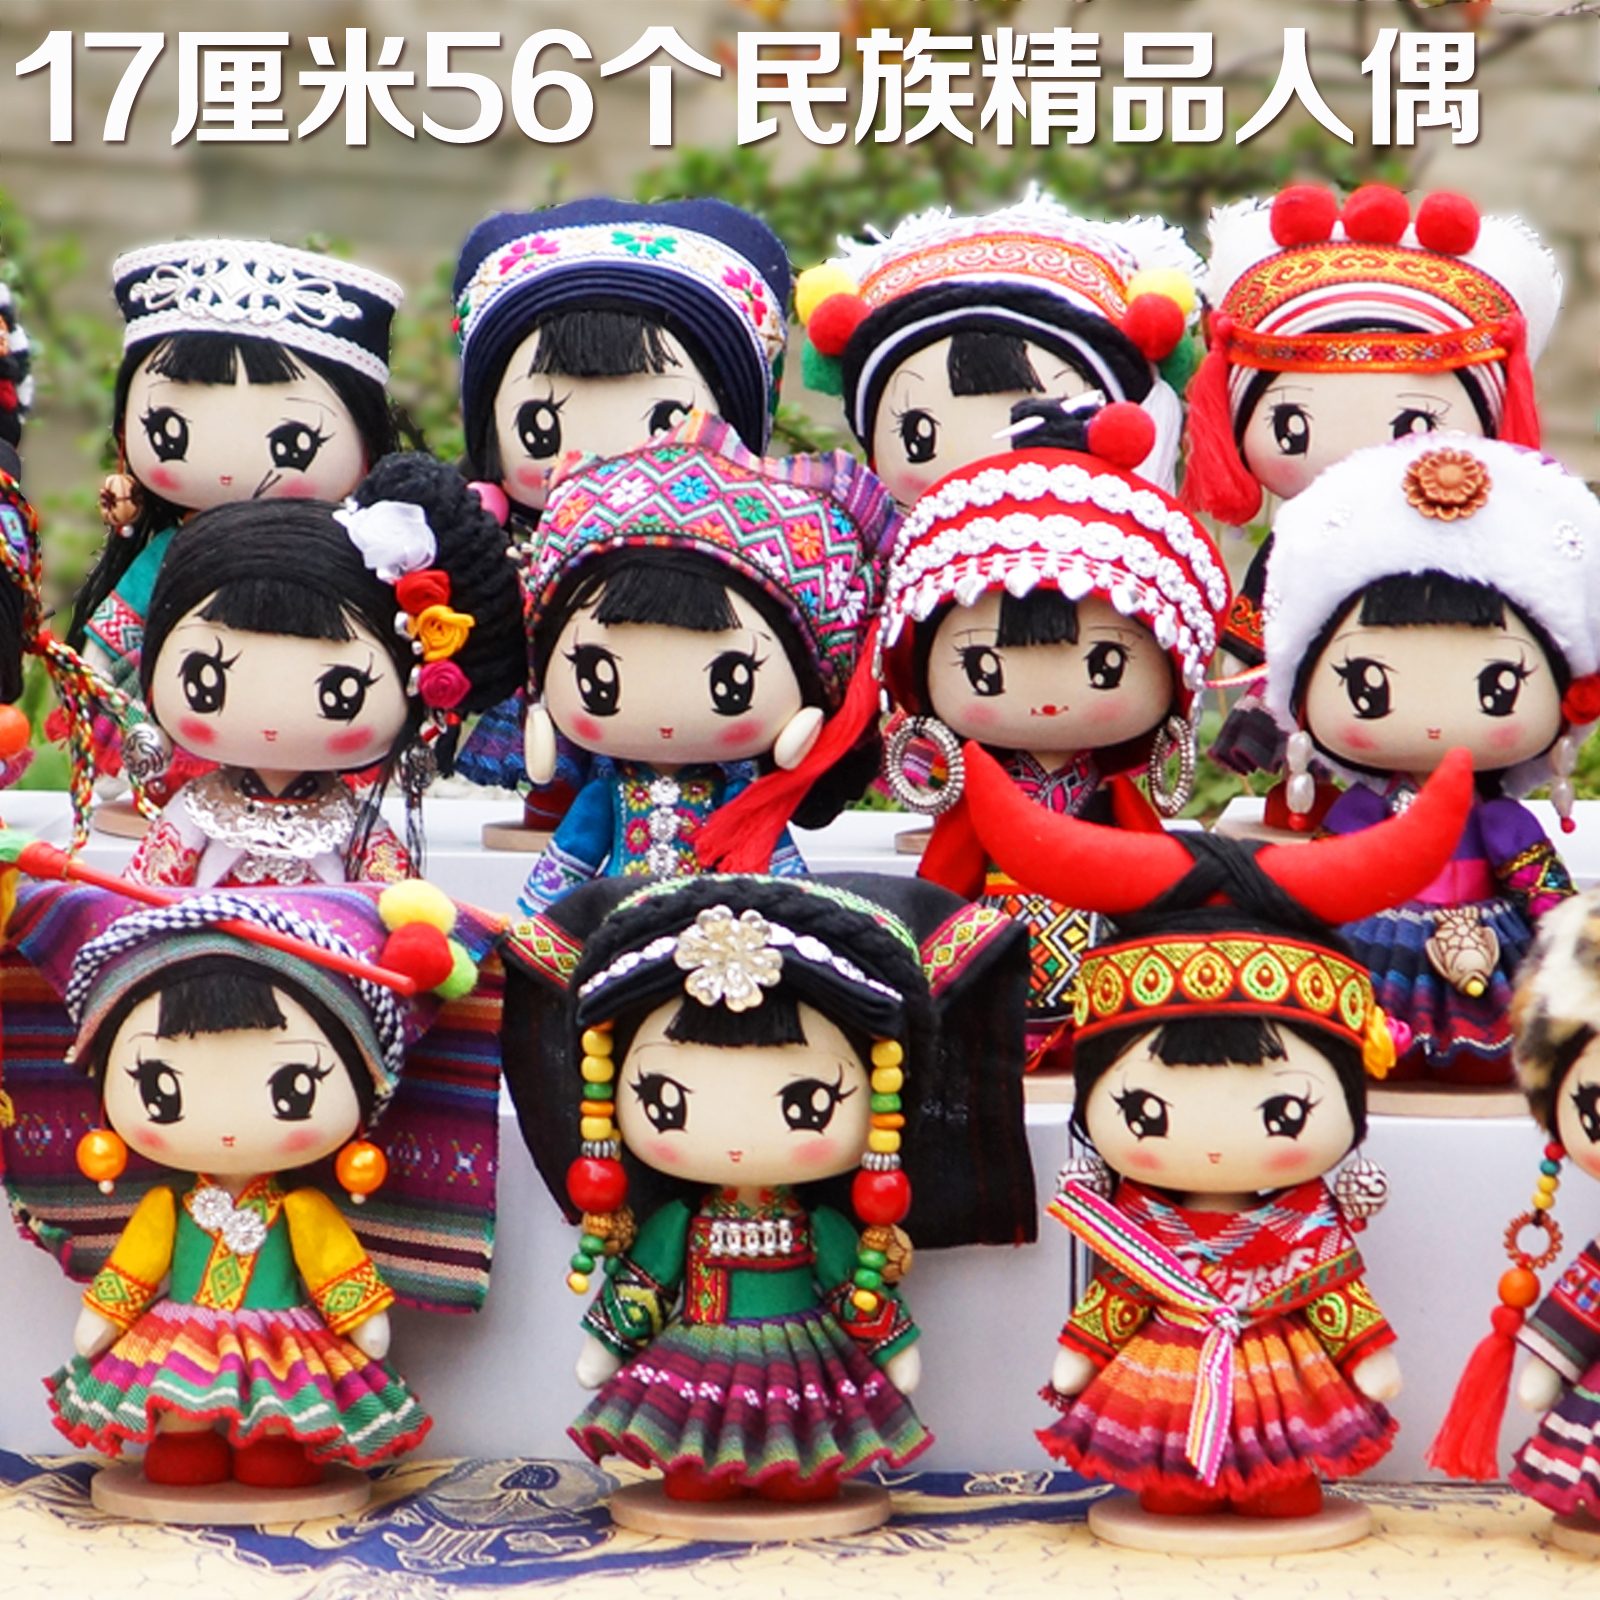 中国手工礼物民族工艺品摆件民族娃娃人偶56民族卡通Q版盲盒手办